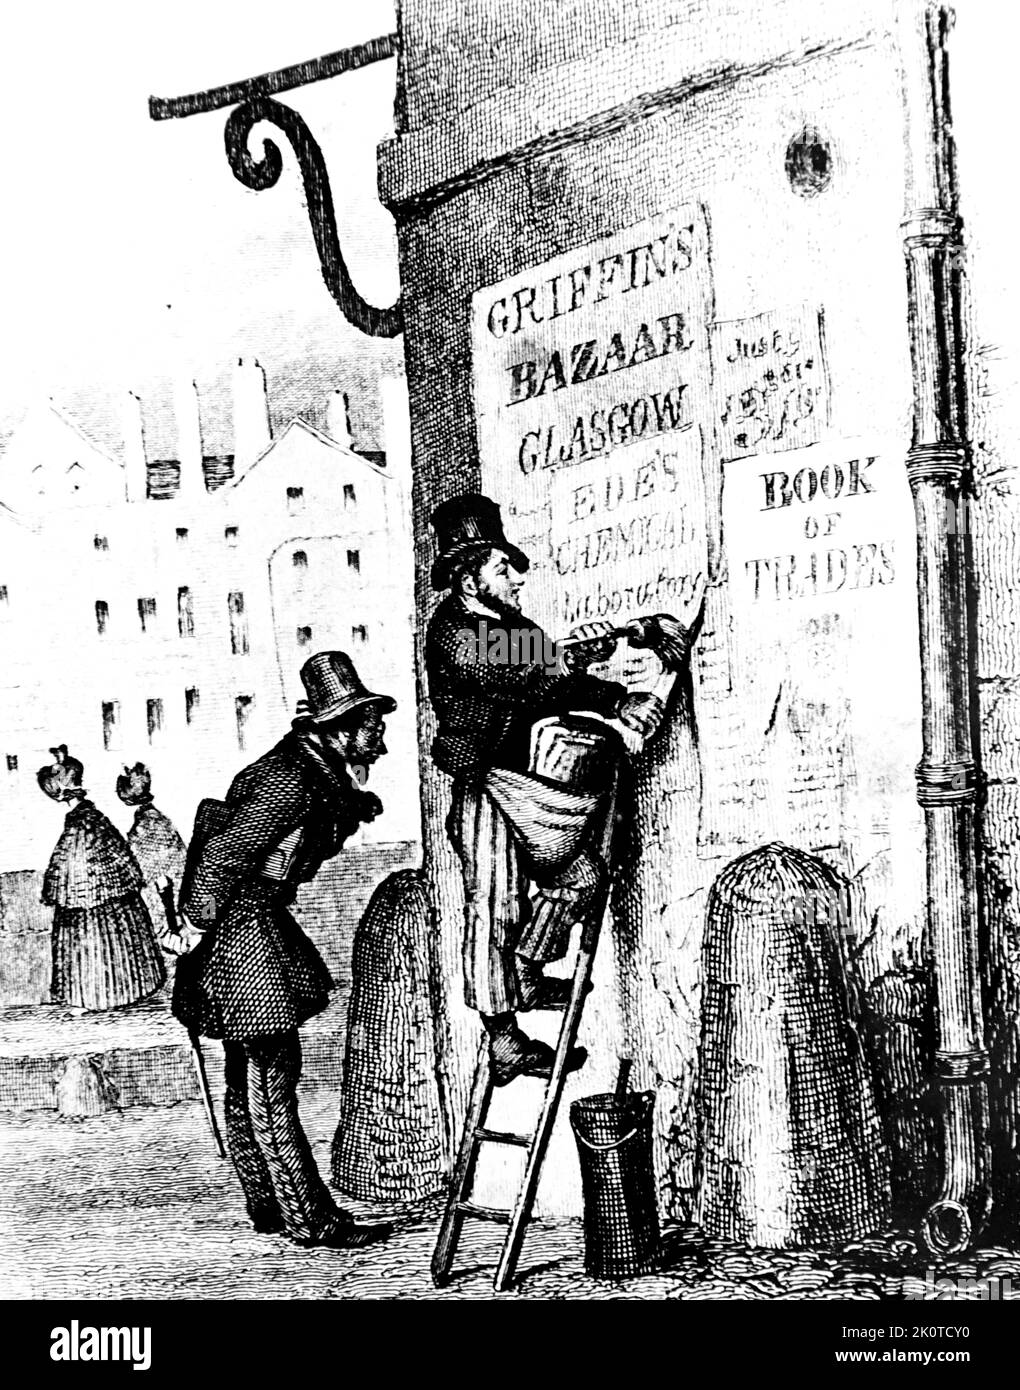 19th Century Illustration d'un Glasgow, Bill Poster collage d'une publicité d'affiche (panneau d'affichage) en Écosse Banque D'Images